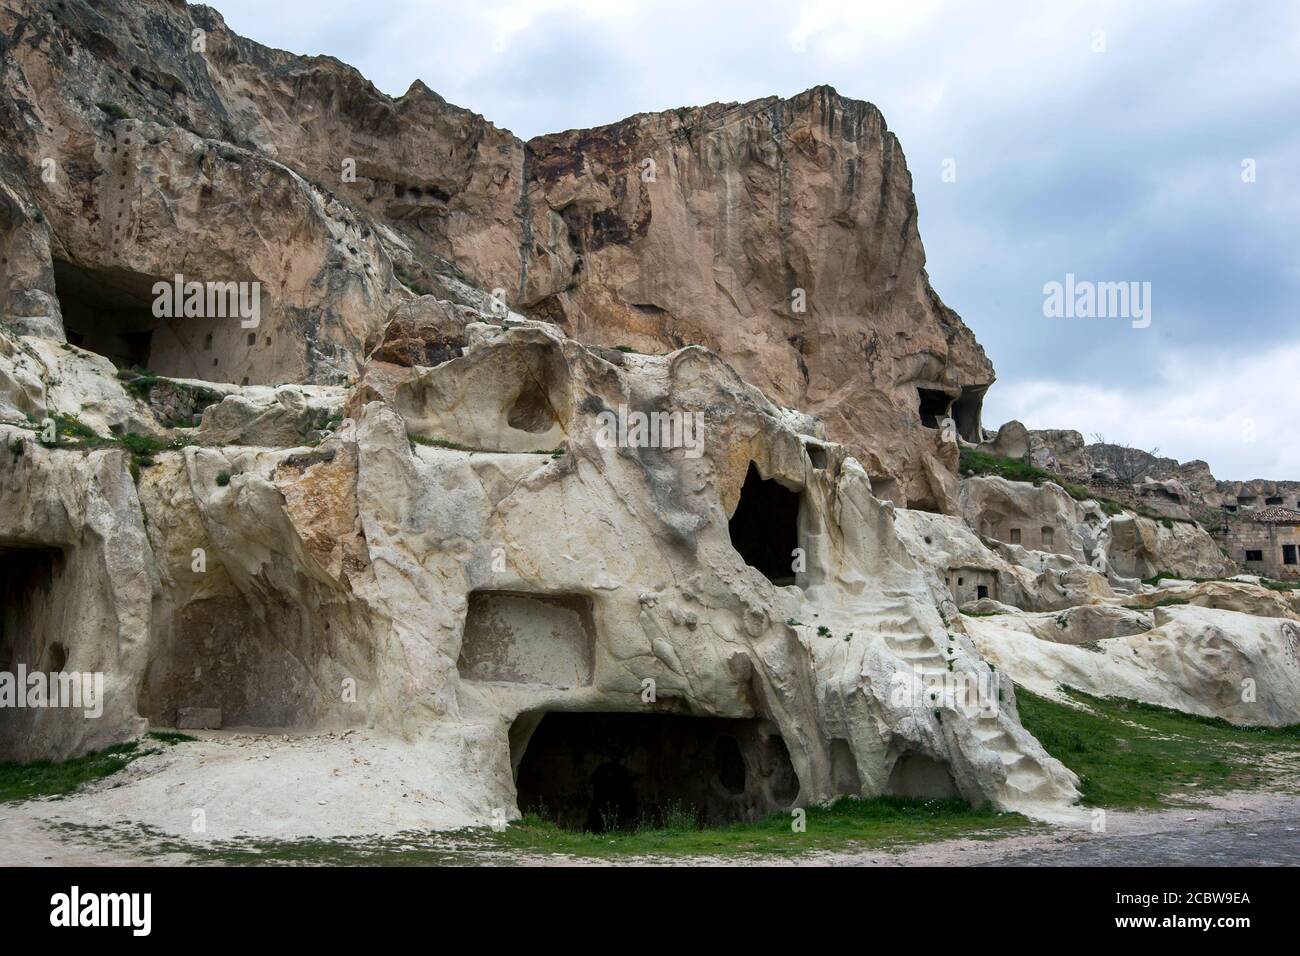 Les ruines des anciennes maisons de grottes et des escaliers sculptés dans une falaise de roche face près d'Urgup dans la région de Cappadoce en Turquie. Banque D'Images